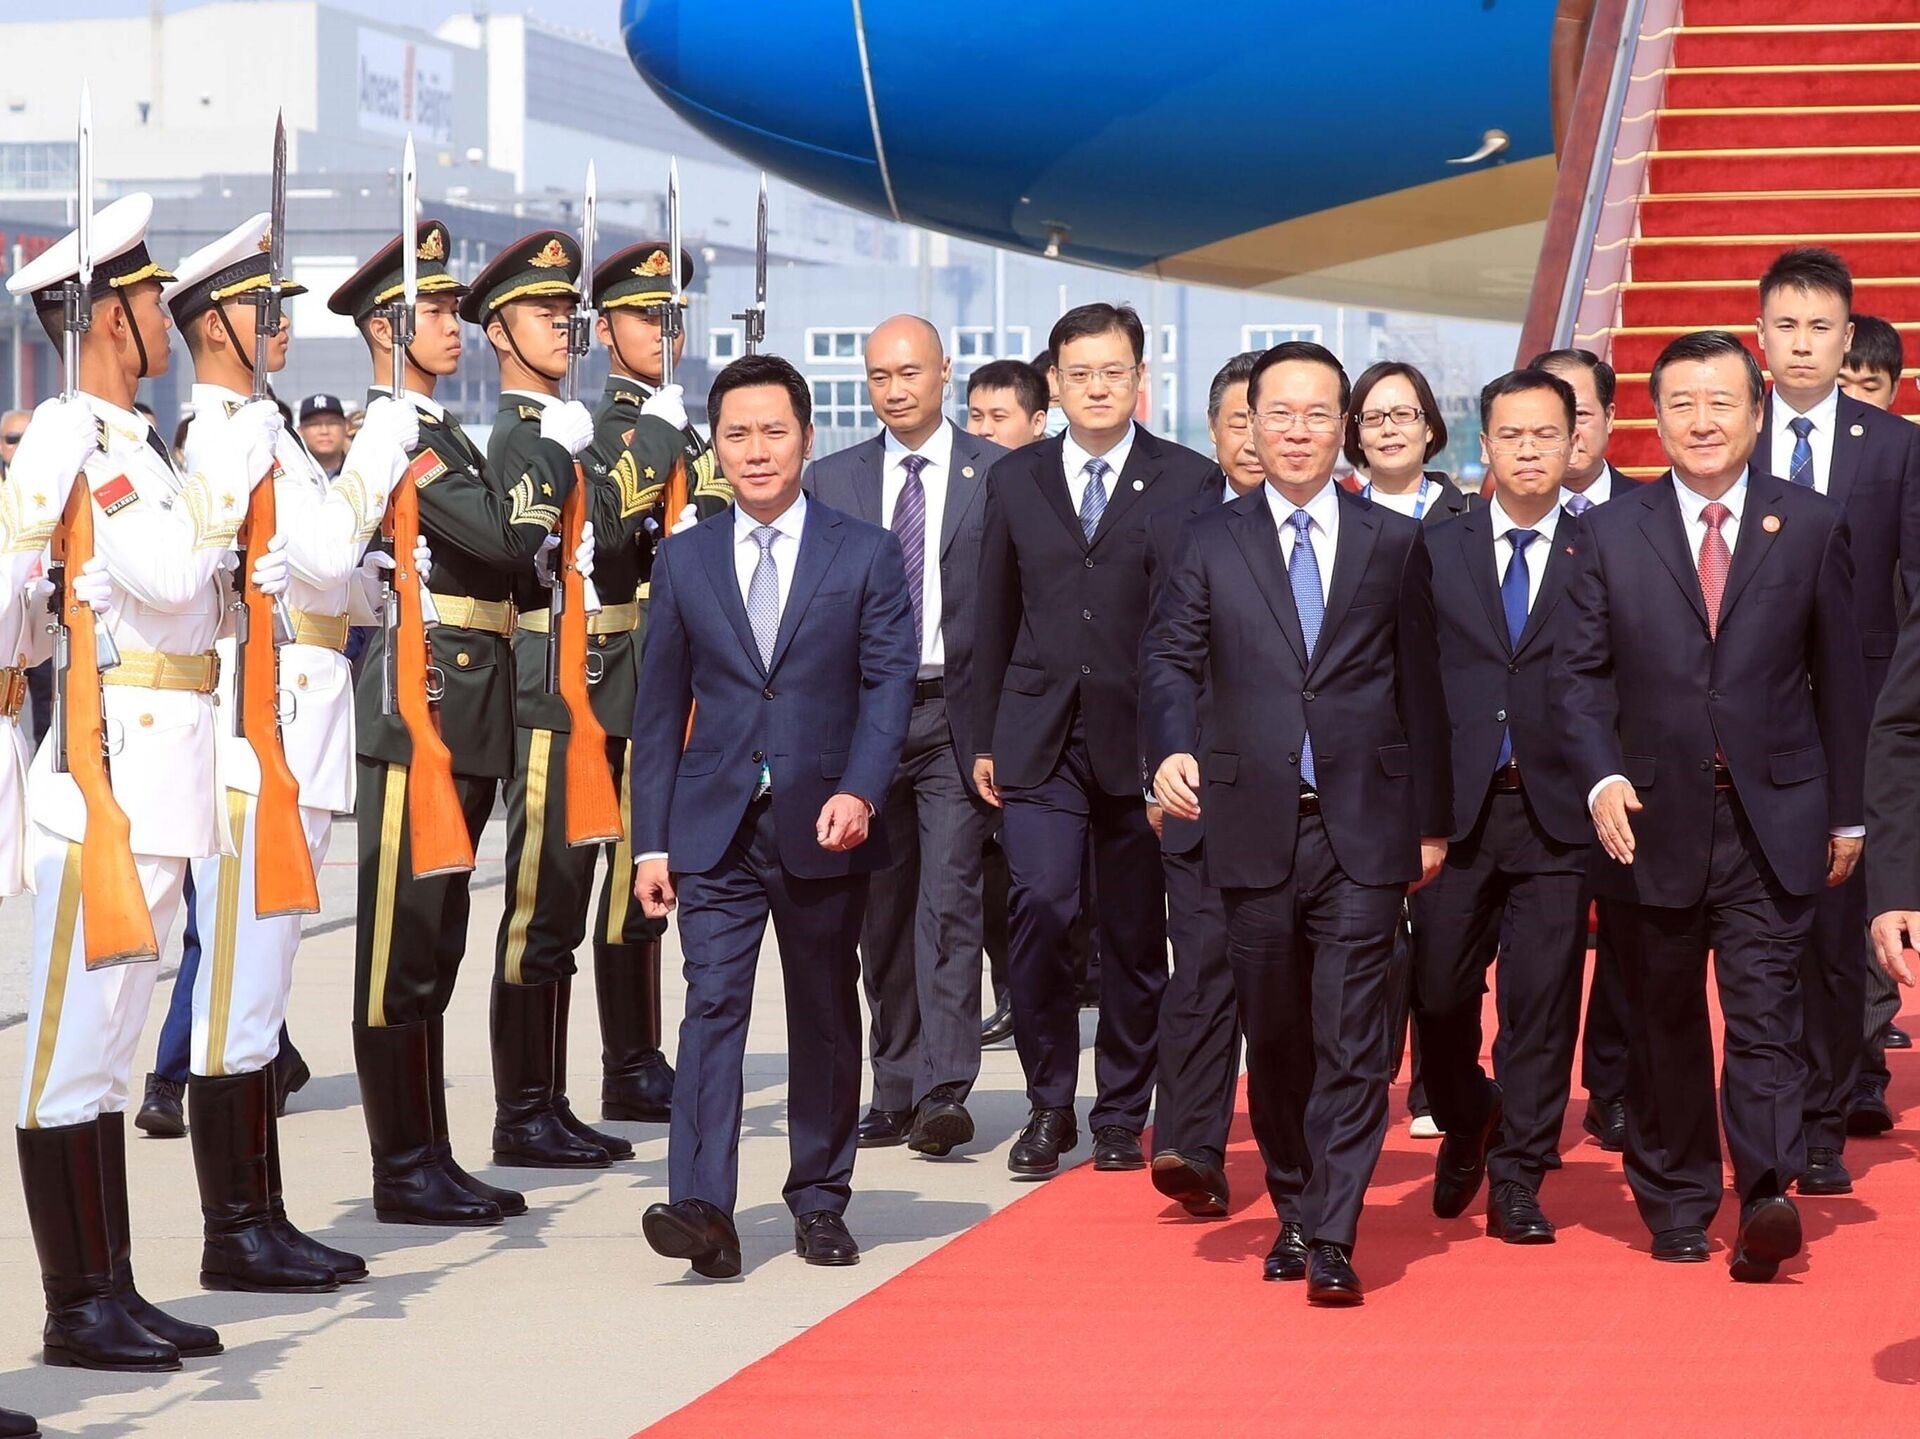 中国住房和城乡建设部部长倪虹、中国驻越大使熊波；越南驻华大使宁成功等到机场迎接。